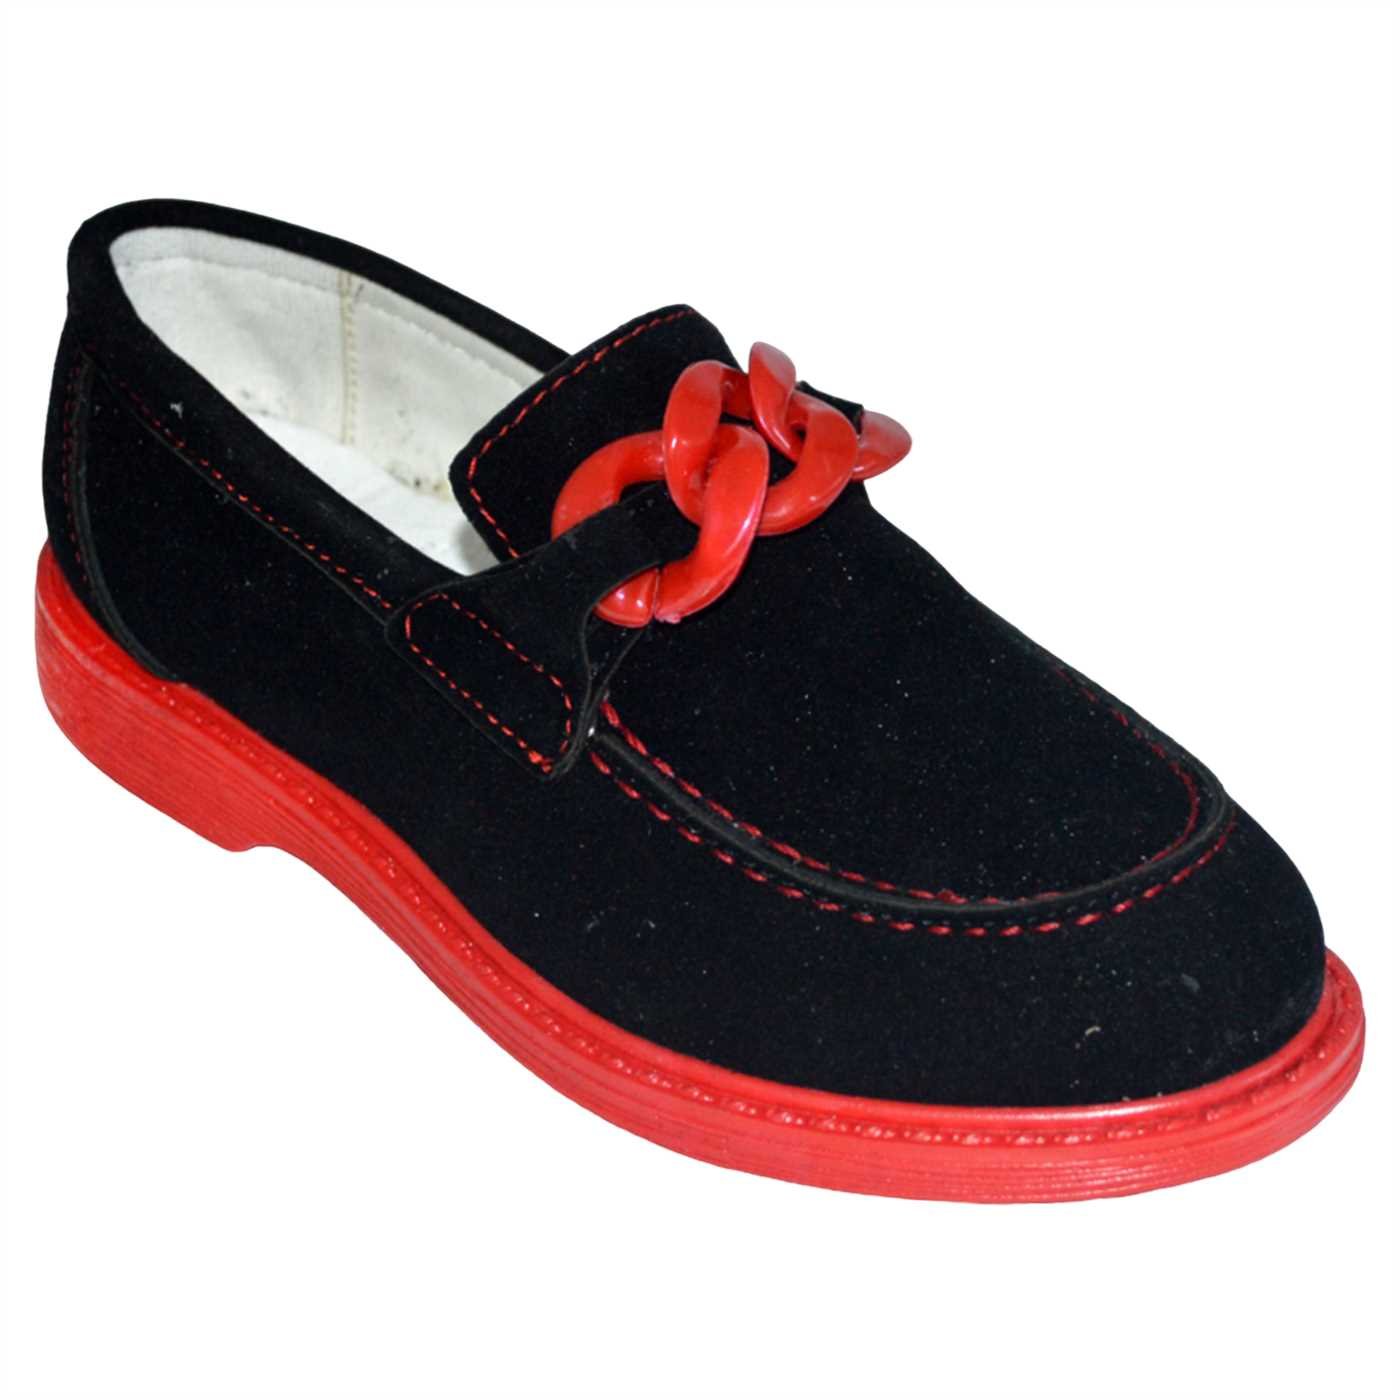 Çocuk Filet Günlük Ayakkabı - siyah/kırmızı taban